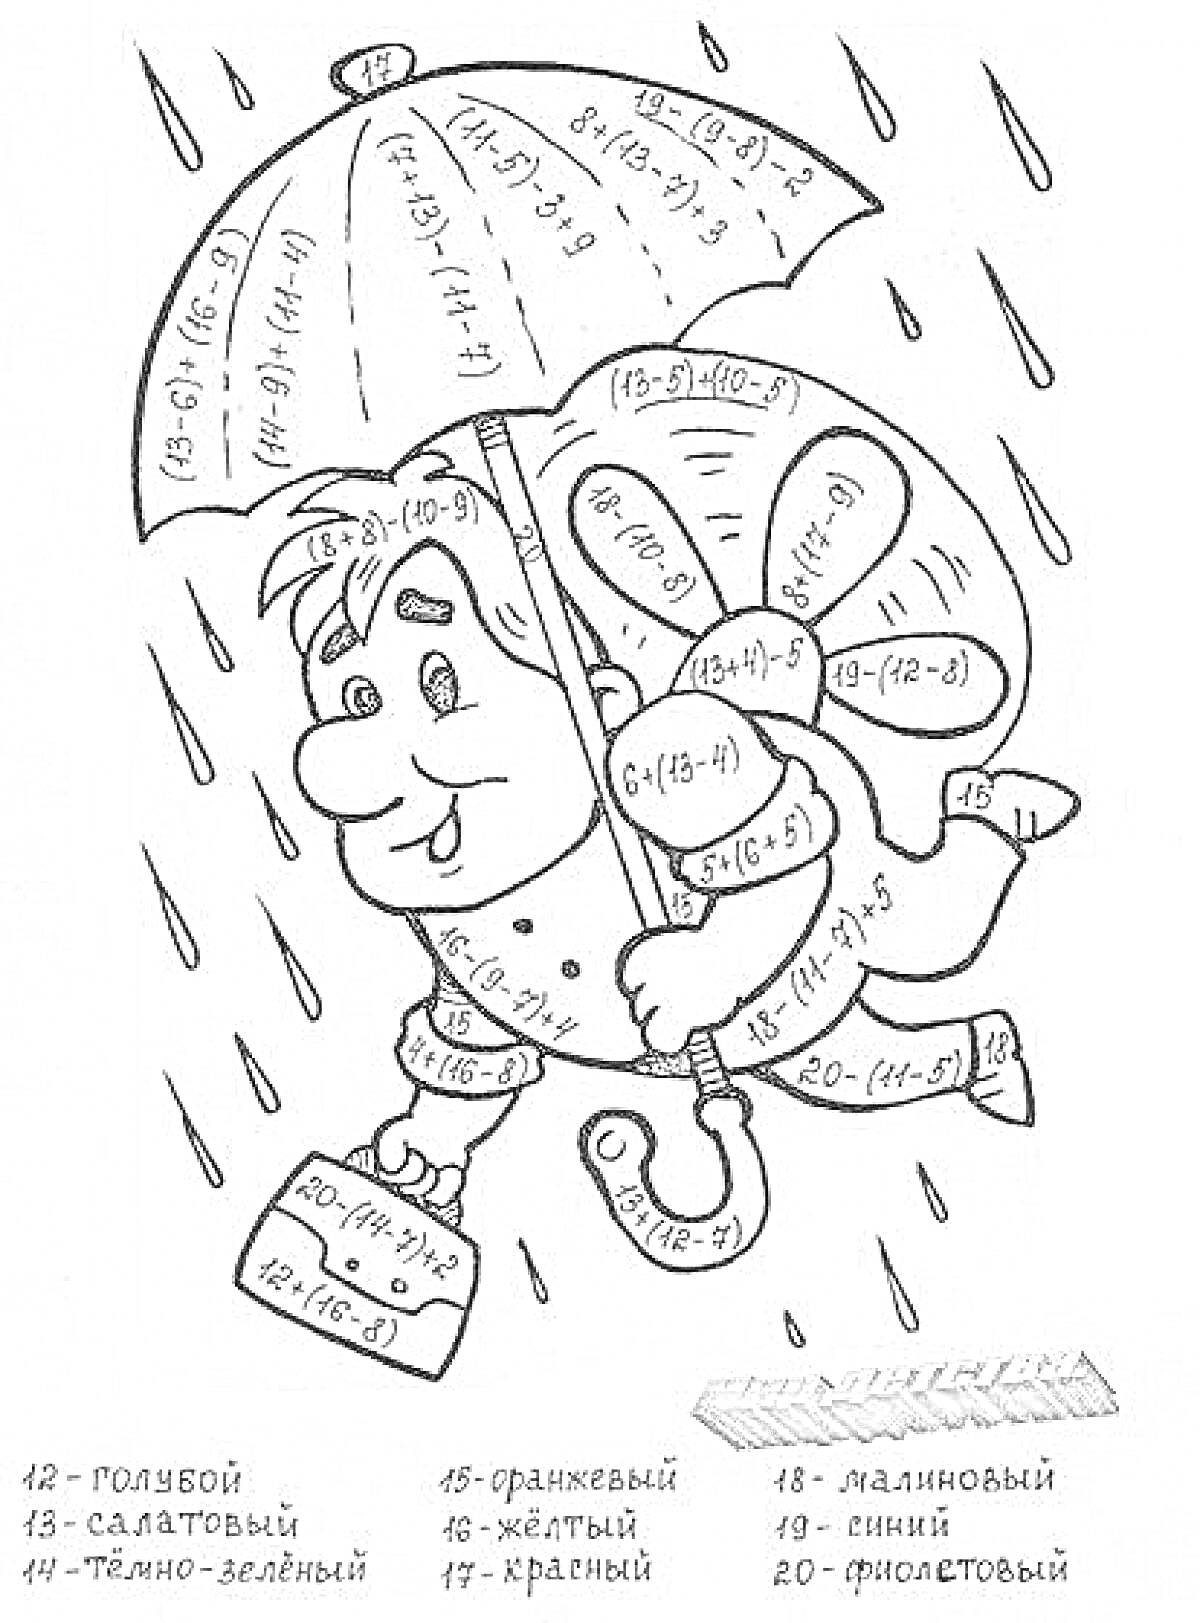  Человек с зонтом на дождливой улице, задачи на вычисление (математика)